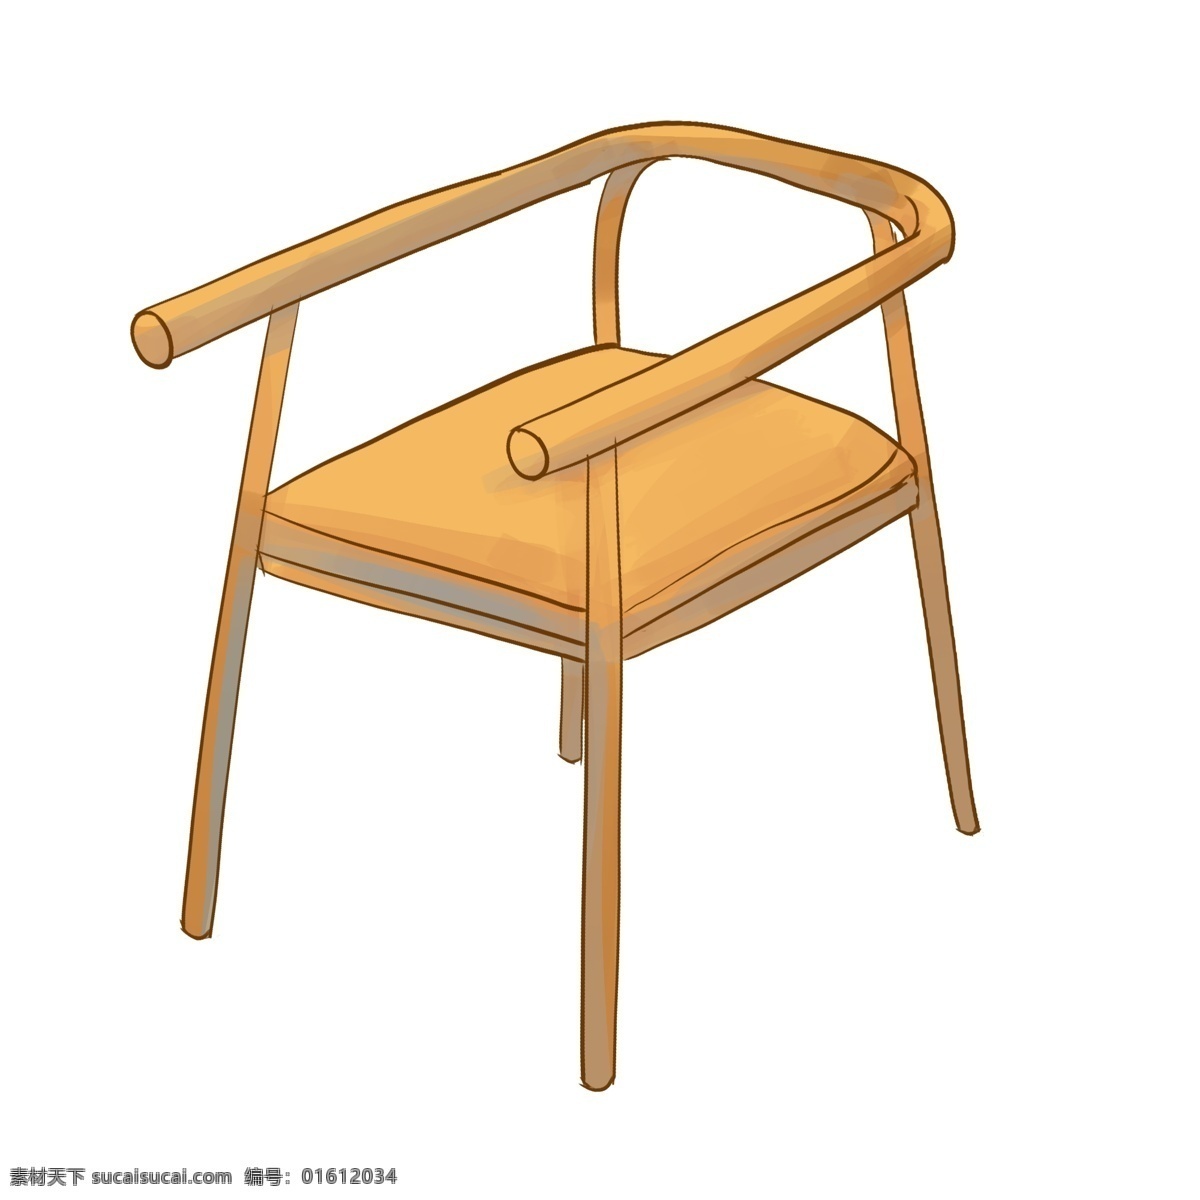 立体 椅子 装饰 插画 立体椅子 黄色的椅子 漂亮的椅子 创意椅子 木质椅子 木头椅子 家装椅子